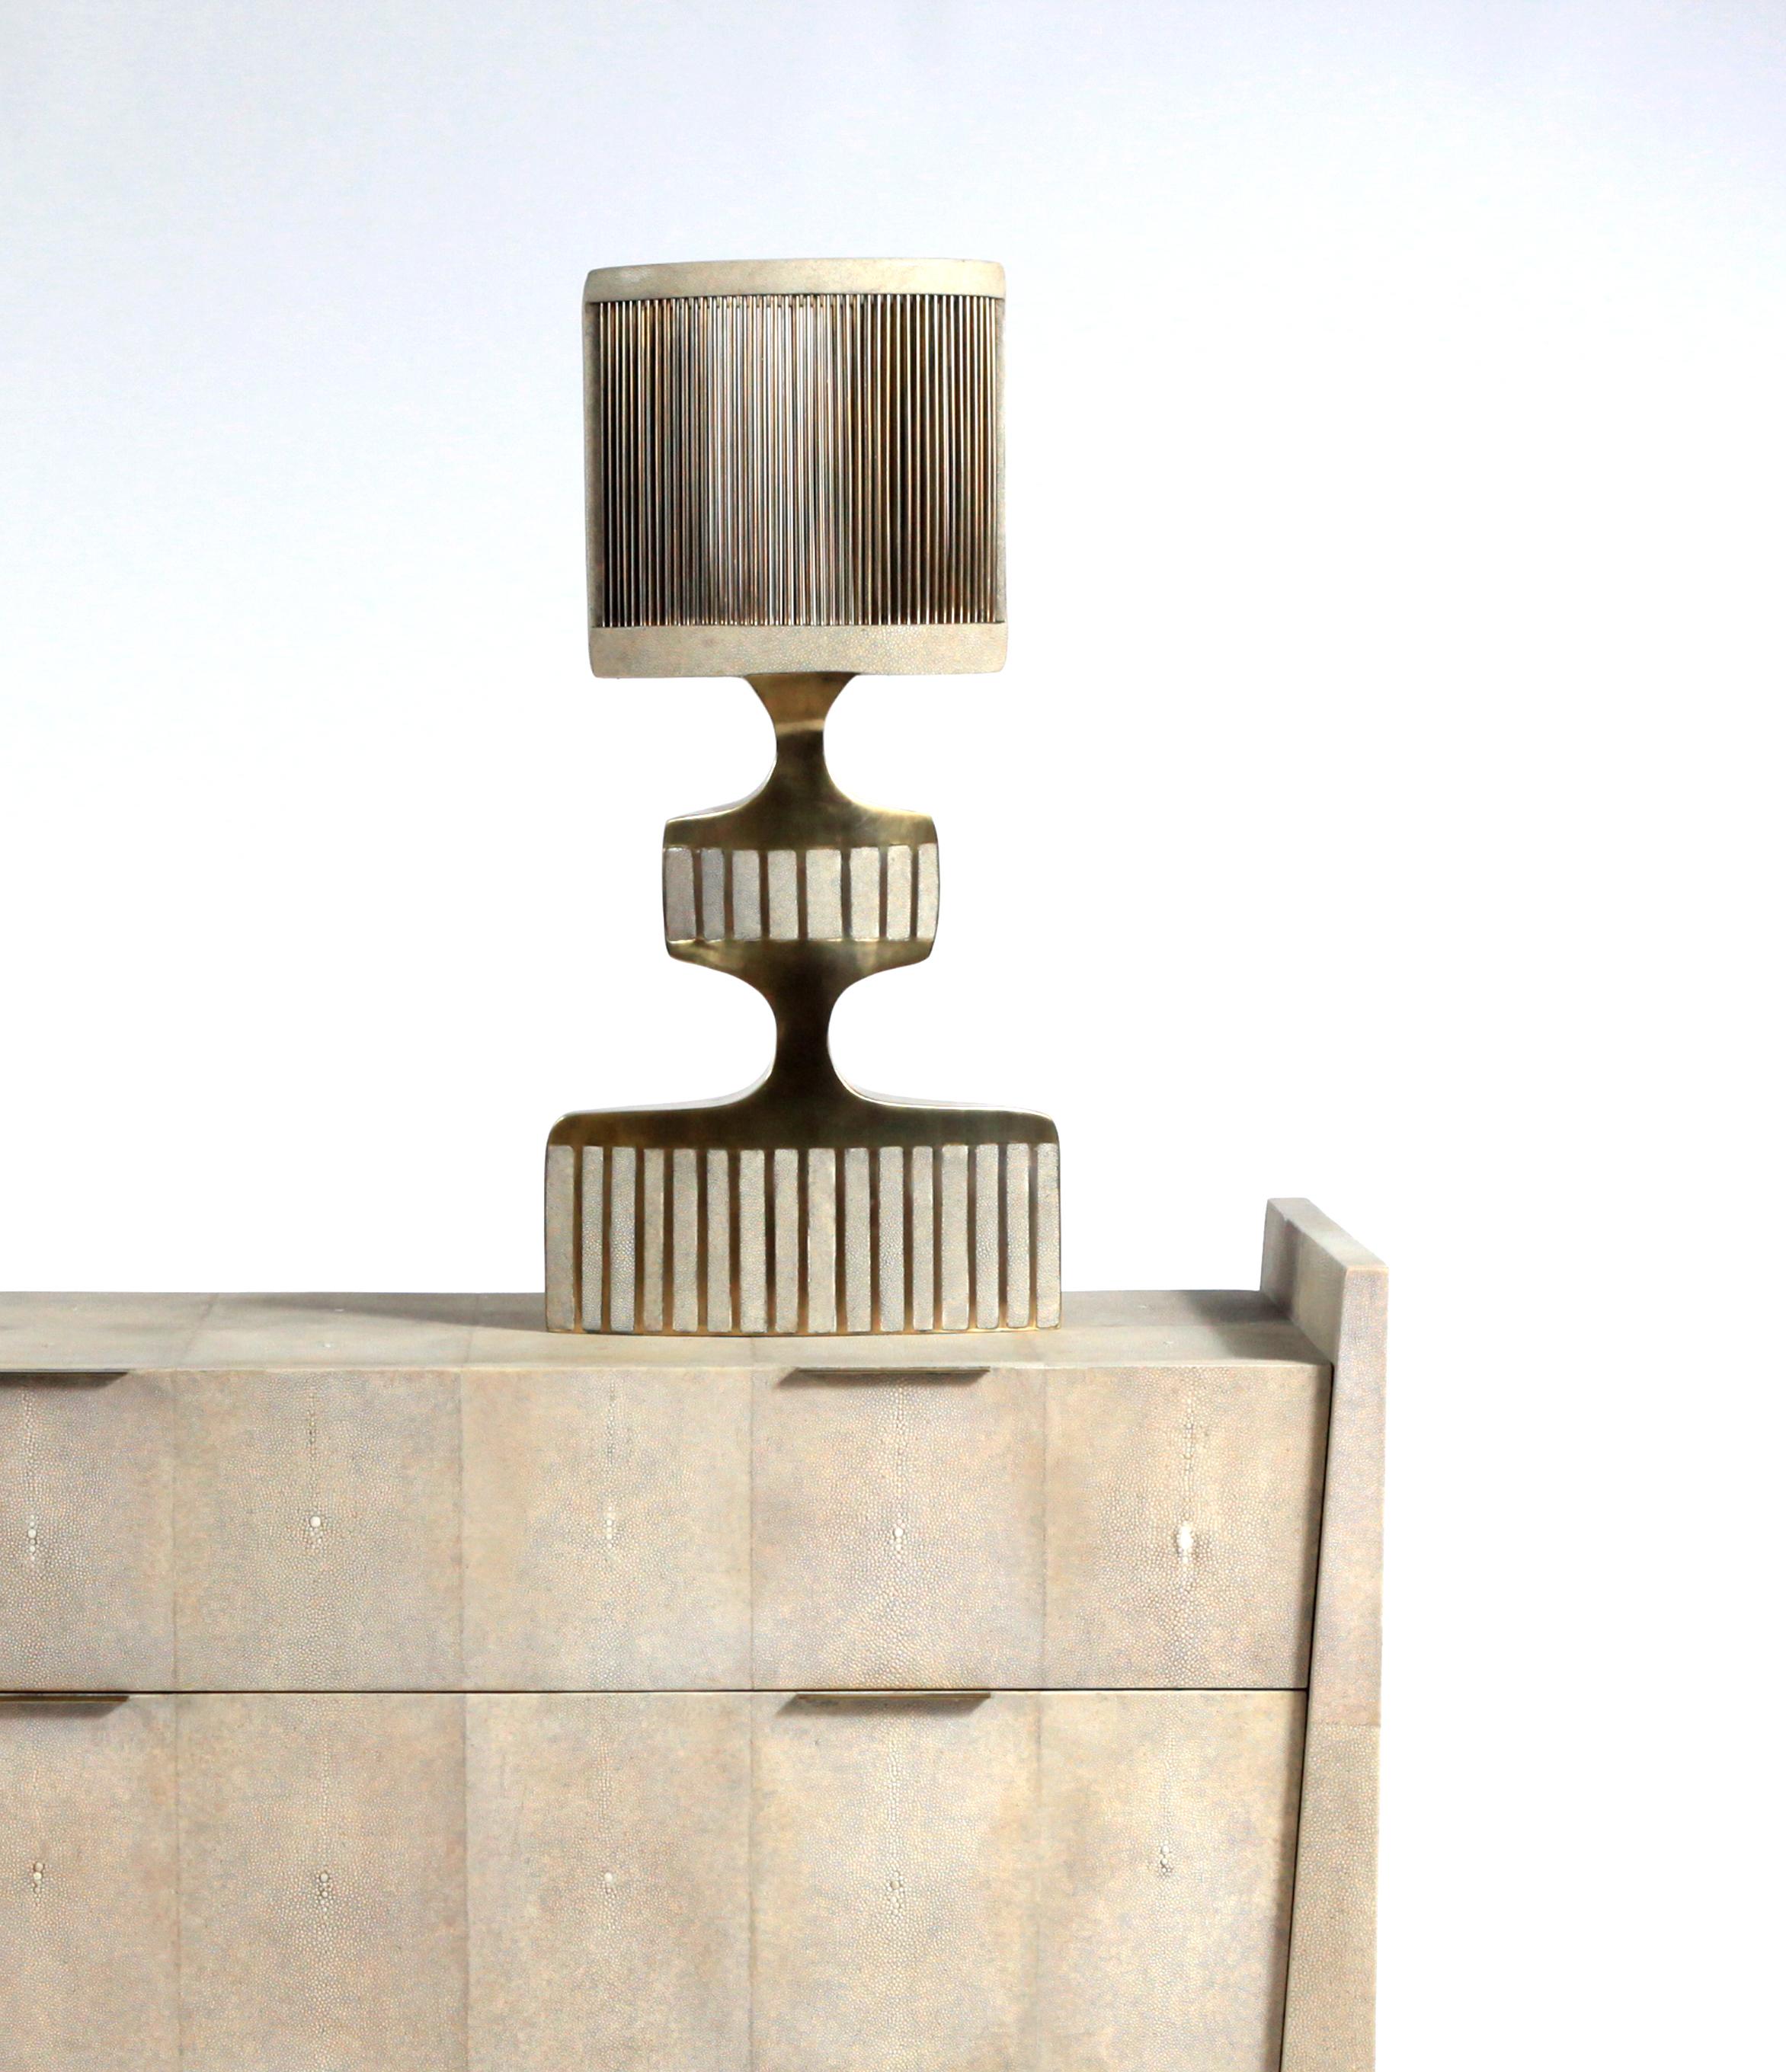 La commode Lola de R&Y Augousti est une pièce élégante avec sa géométrie subtile. Cette table de chevet est entièrement marquetée en galuchat crème avec de discrètes poignées plates en laiton bronze-patiné pour les tiroirs. Les tiroirs sont